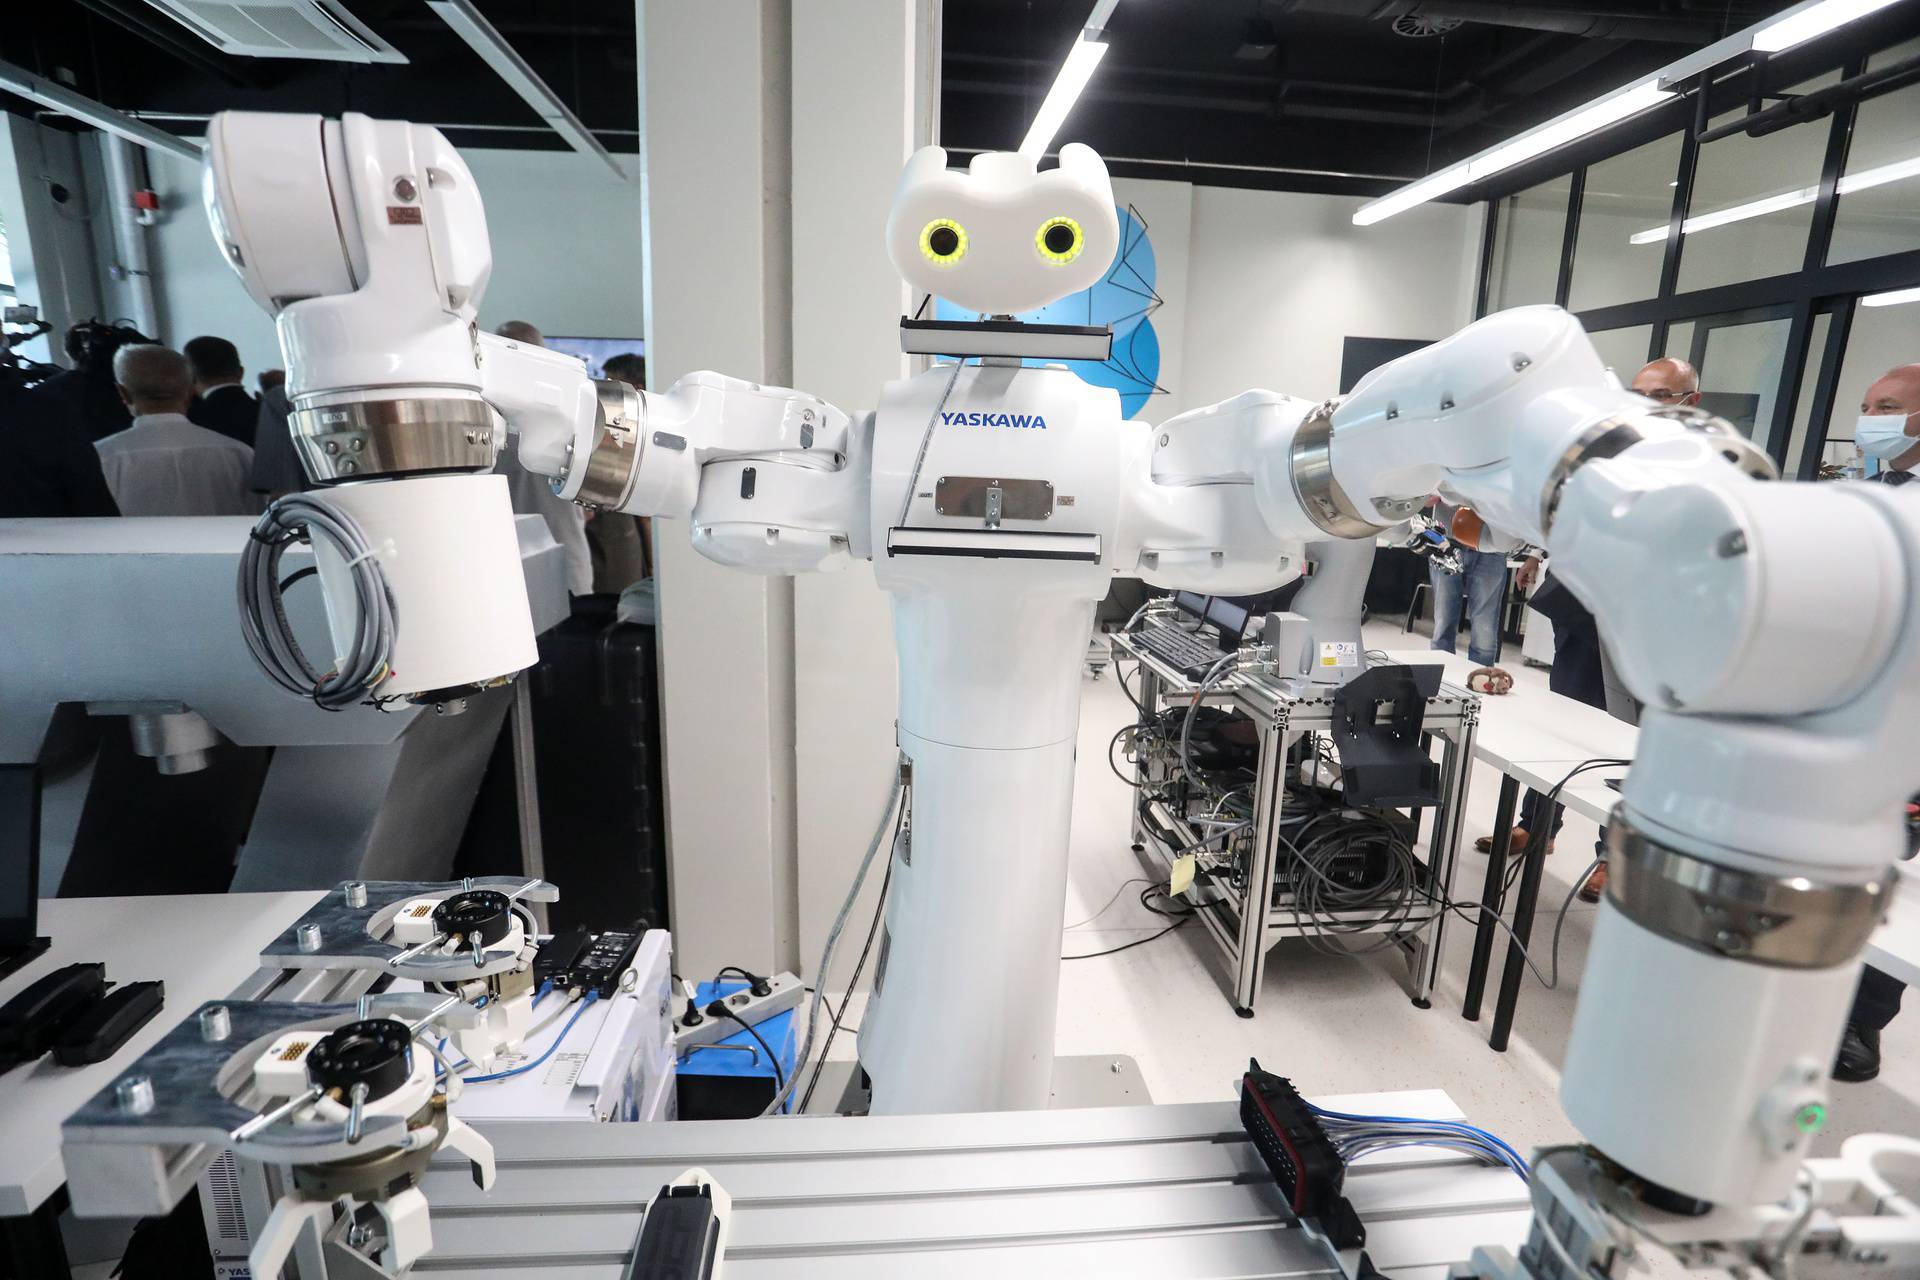 Centar izvrsnosti na strojarstvu: Robotski pas Čip bez greške poveo premijera u budućnost